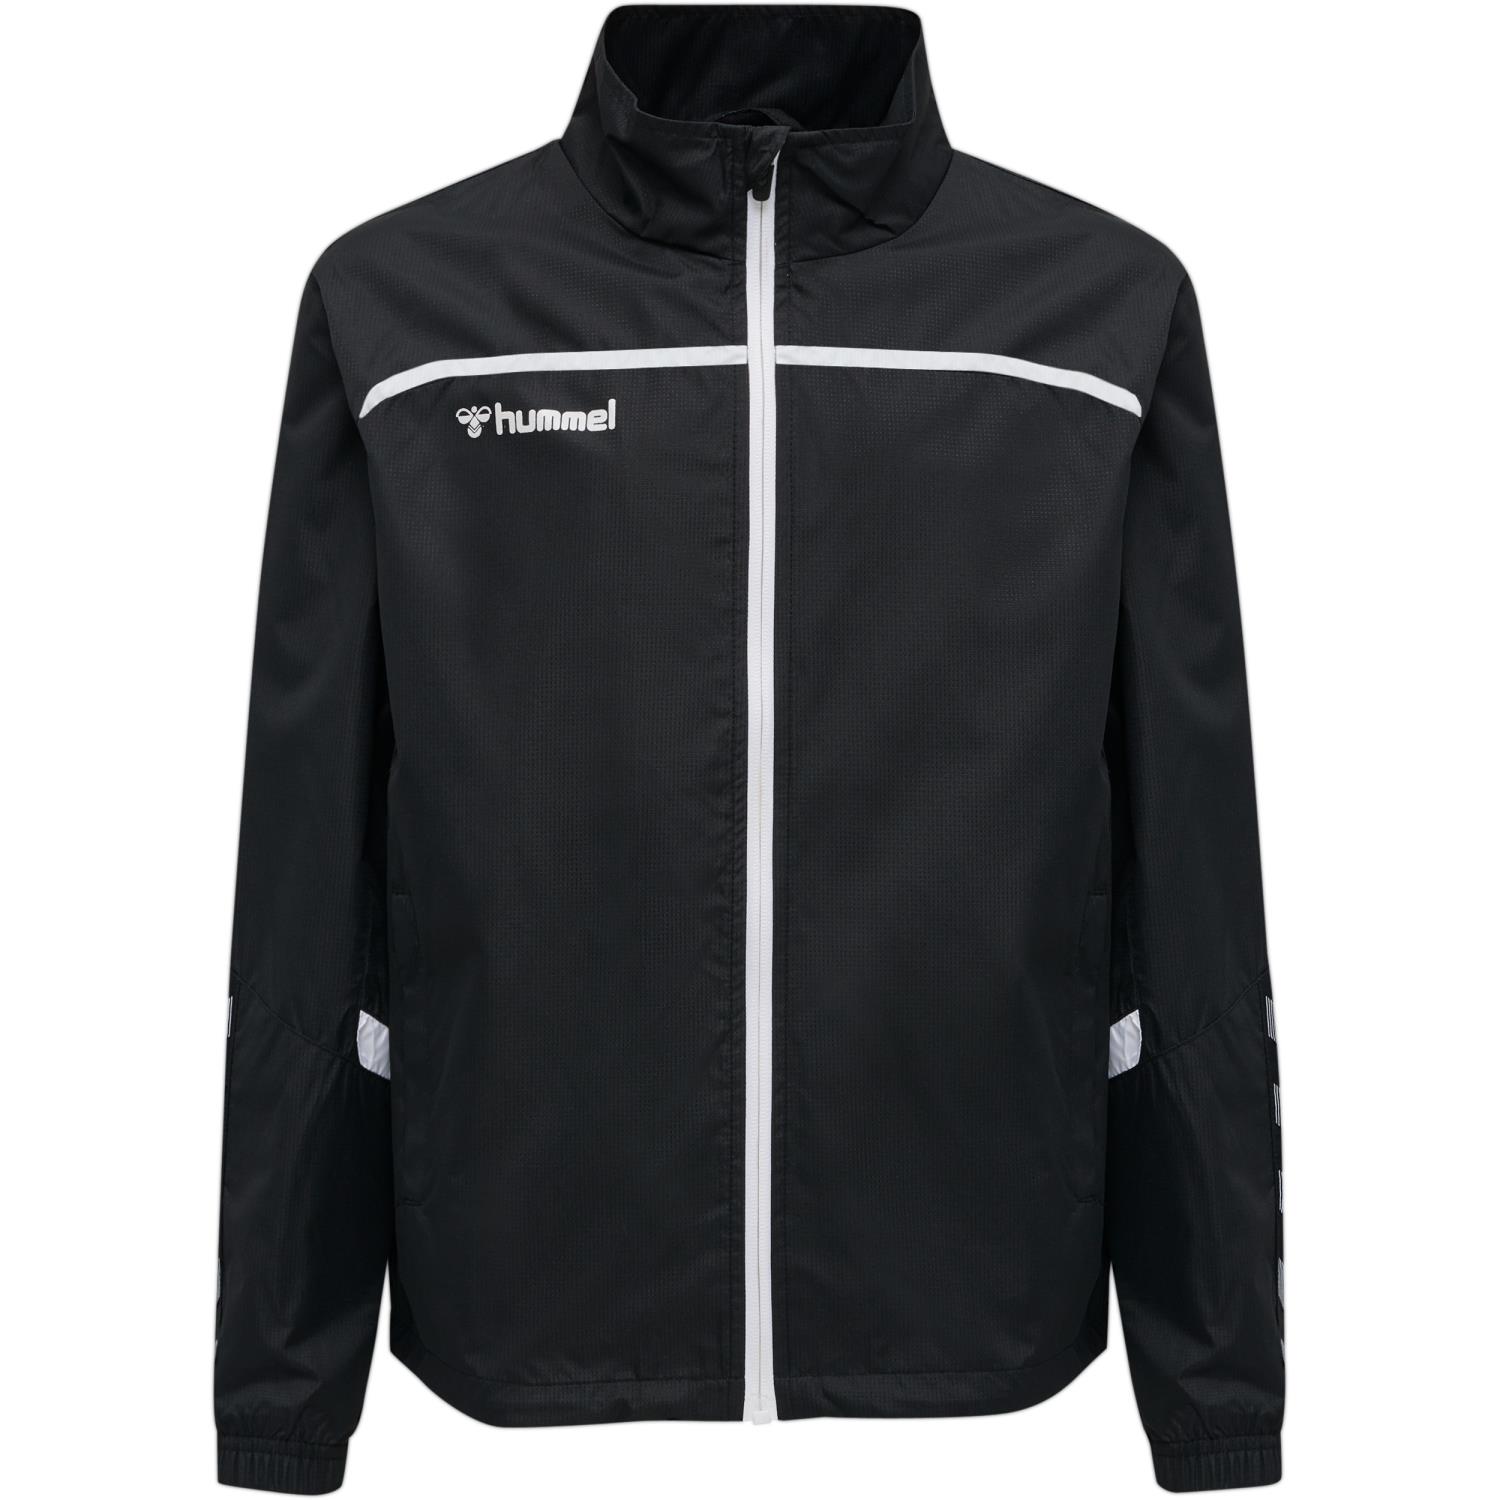 Hummel Authentic Training Jacket